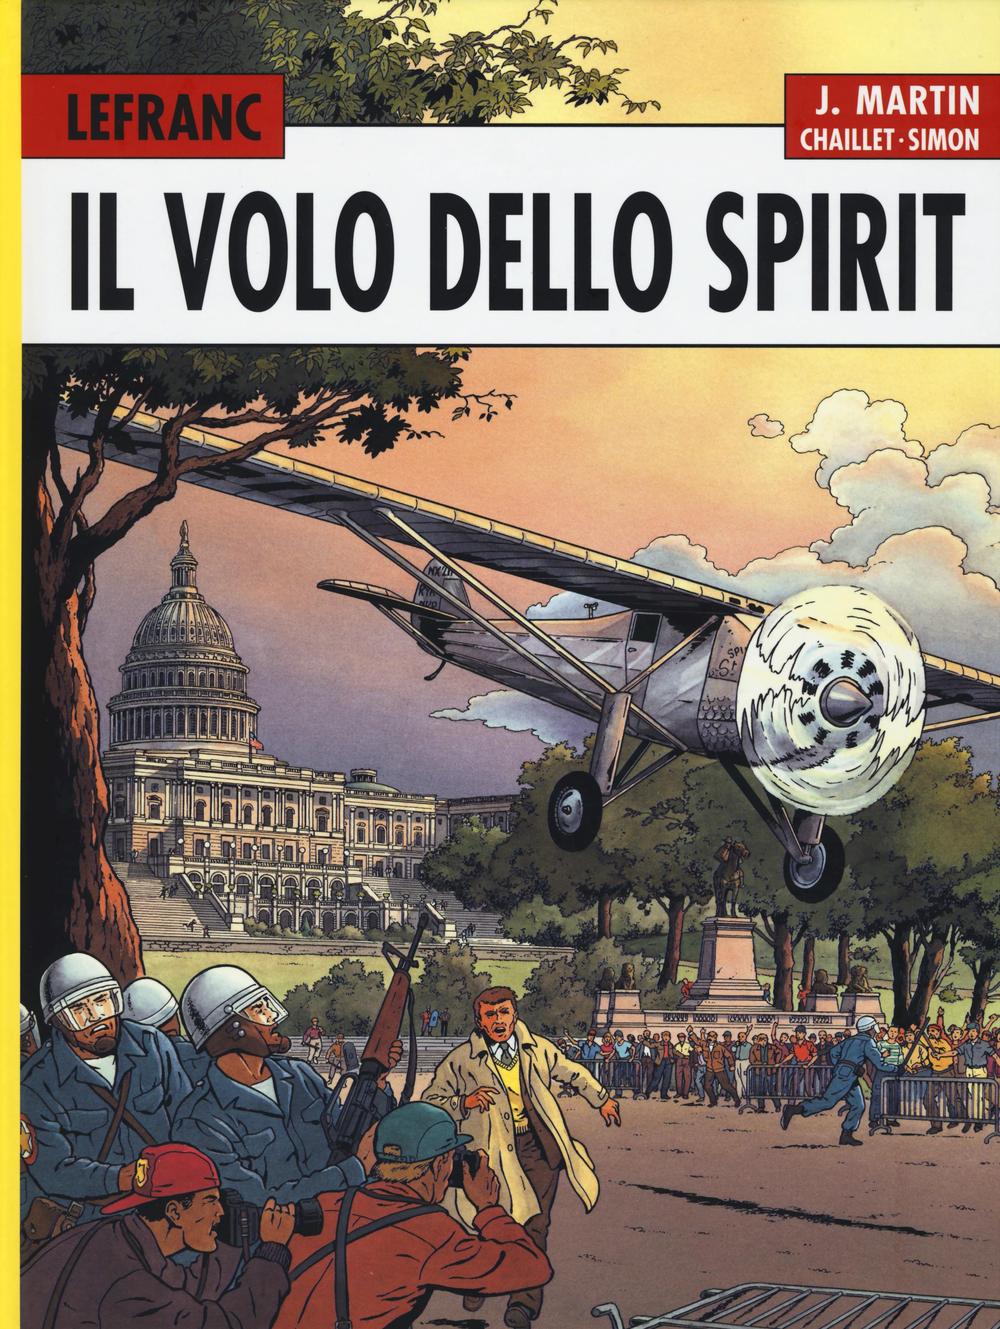 Il volo dello Spirit. Lefranc l'integrale (1998-2002). Vol. 5